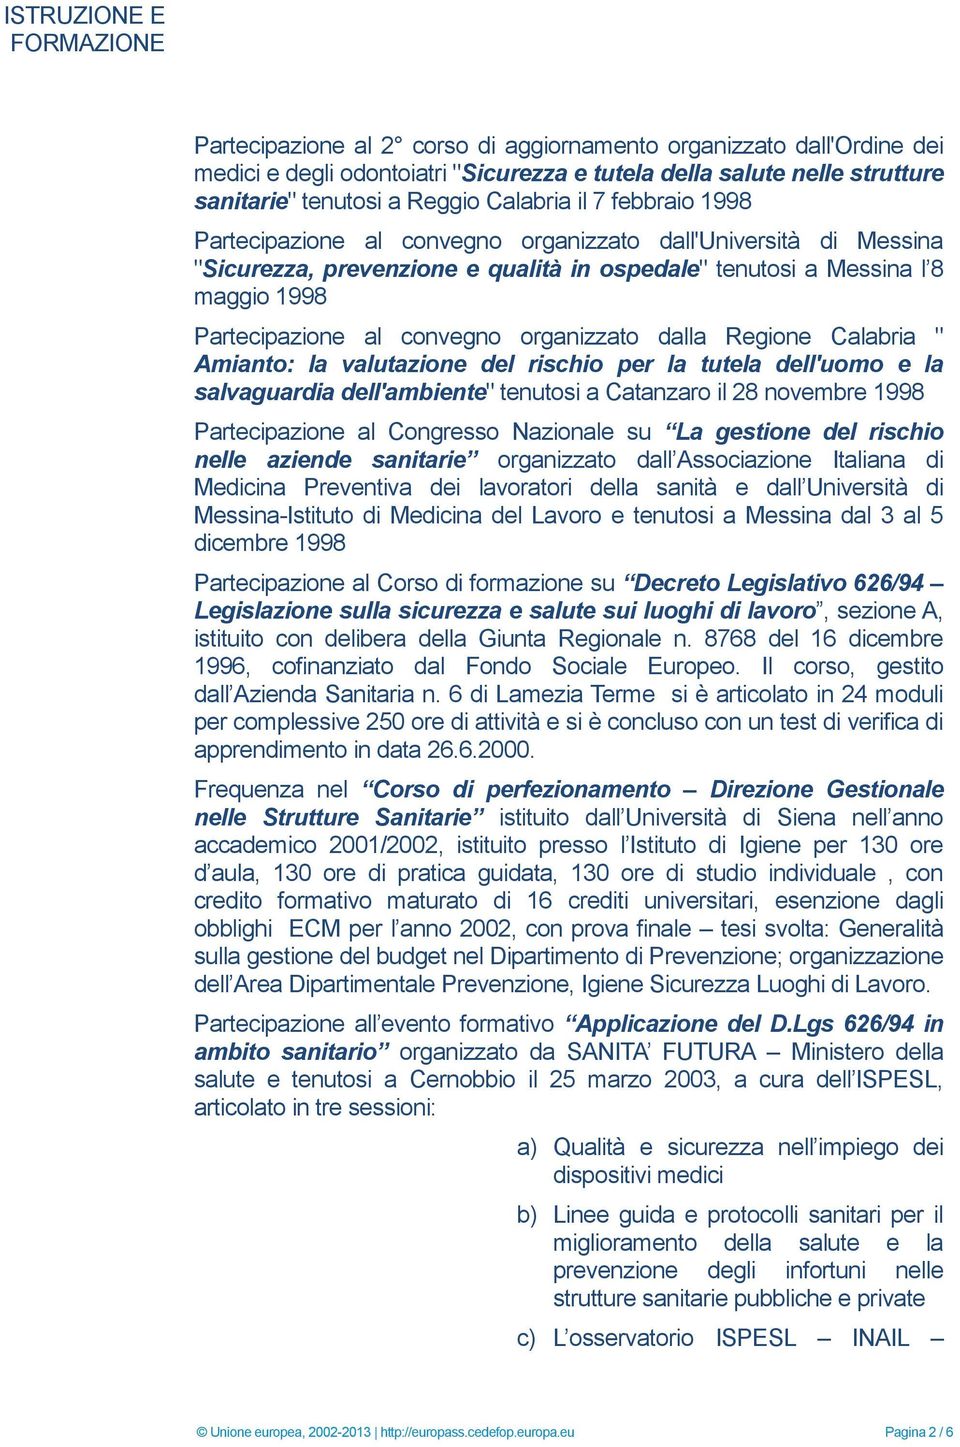 convegno organizzato dalla Regione Calabria " Amianto: la valutazione del rischio per la tutela dell'uomo e la salvaguardia dell'ambiente" tenutosi a Catanzaro il 28 novembre 1998 Partecipazione al